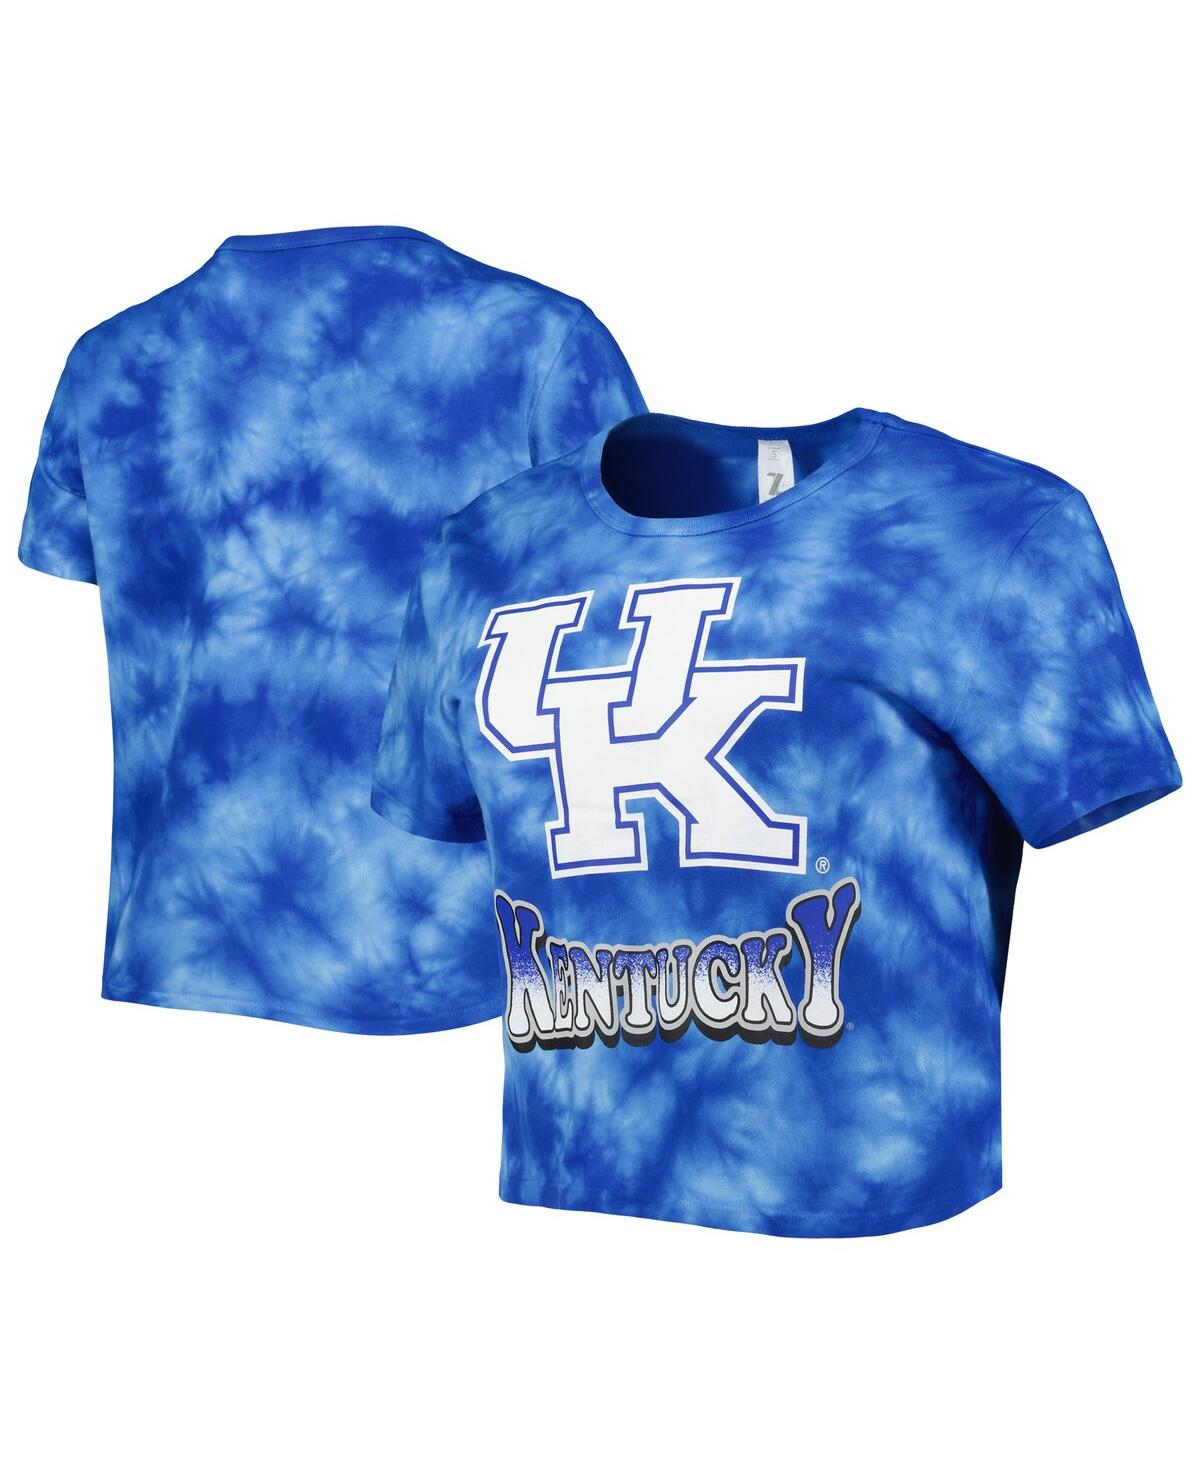 Women's ZooZatz Royal Kentucky Wildcats Cloud-Dye Cropped T-shirt - Royal